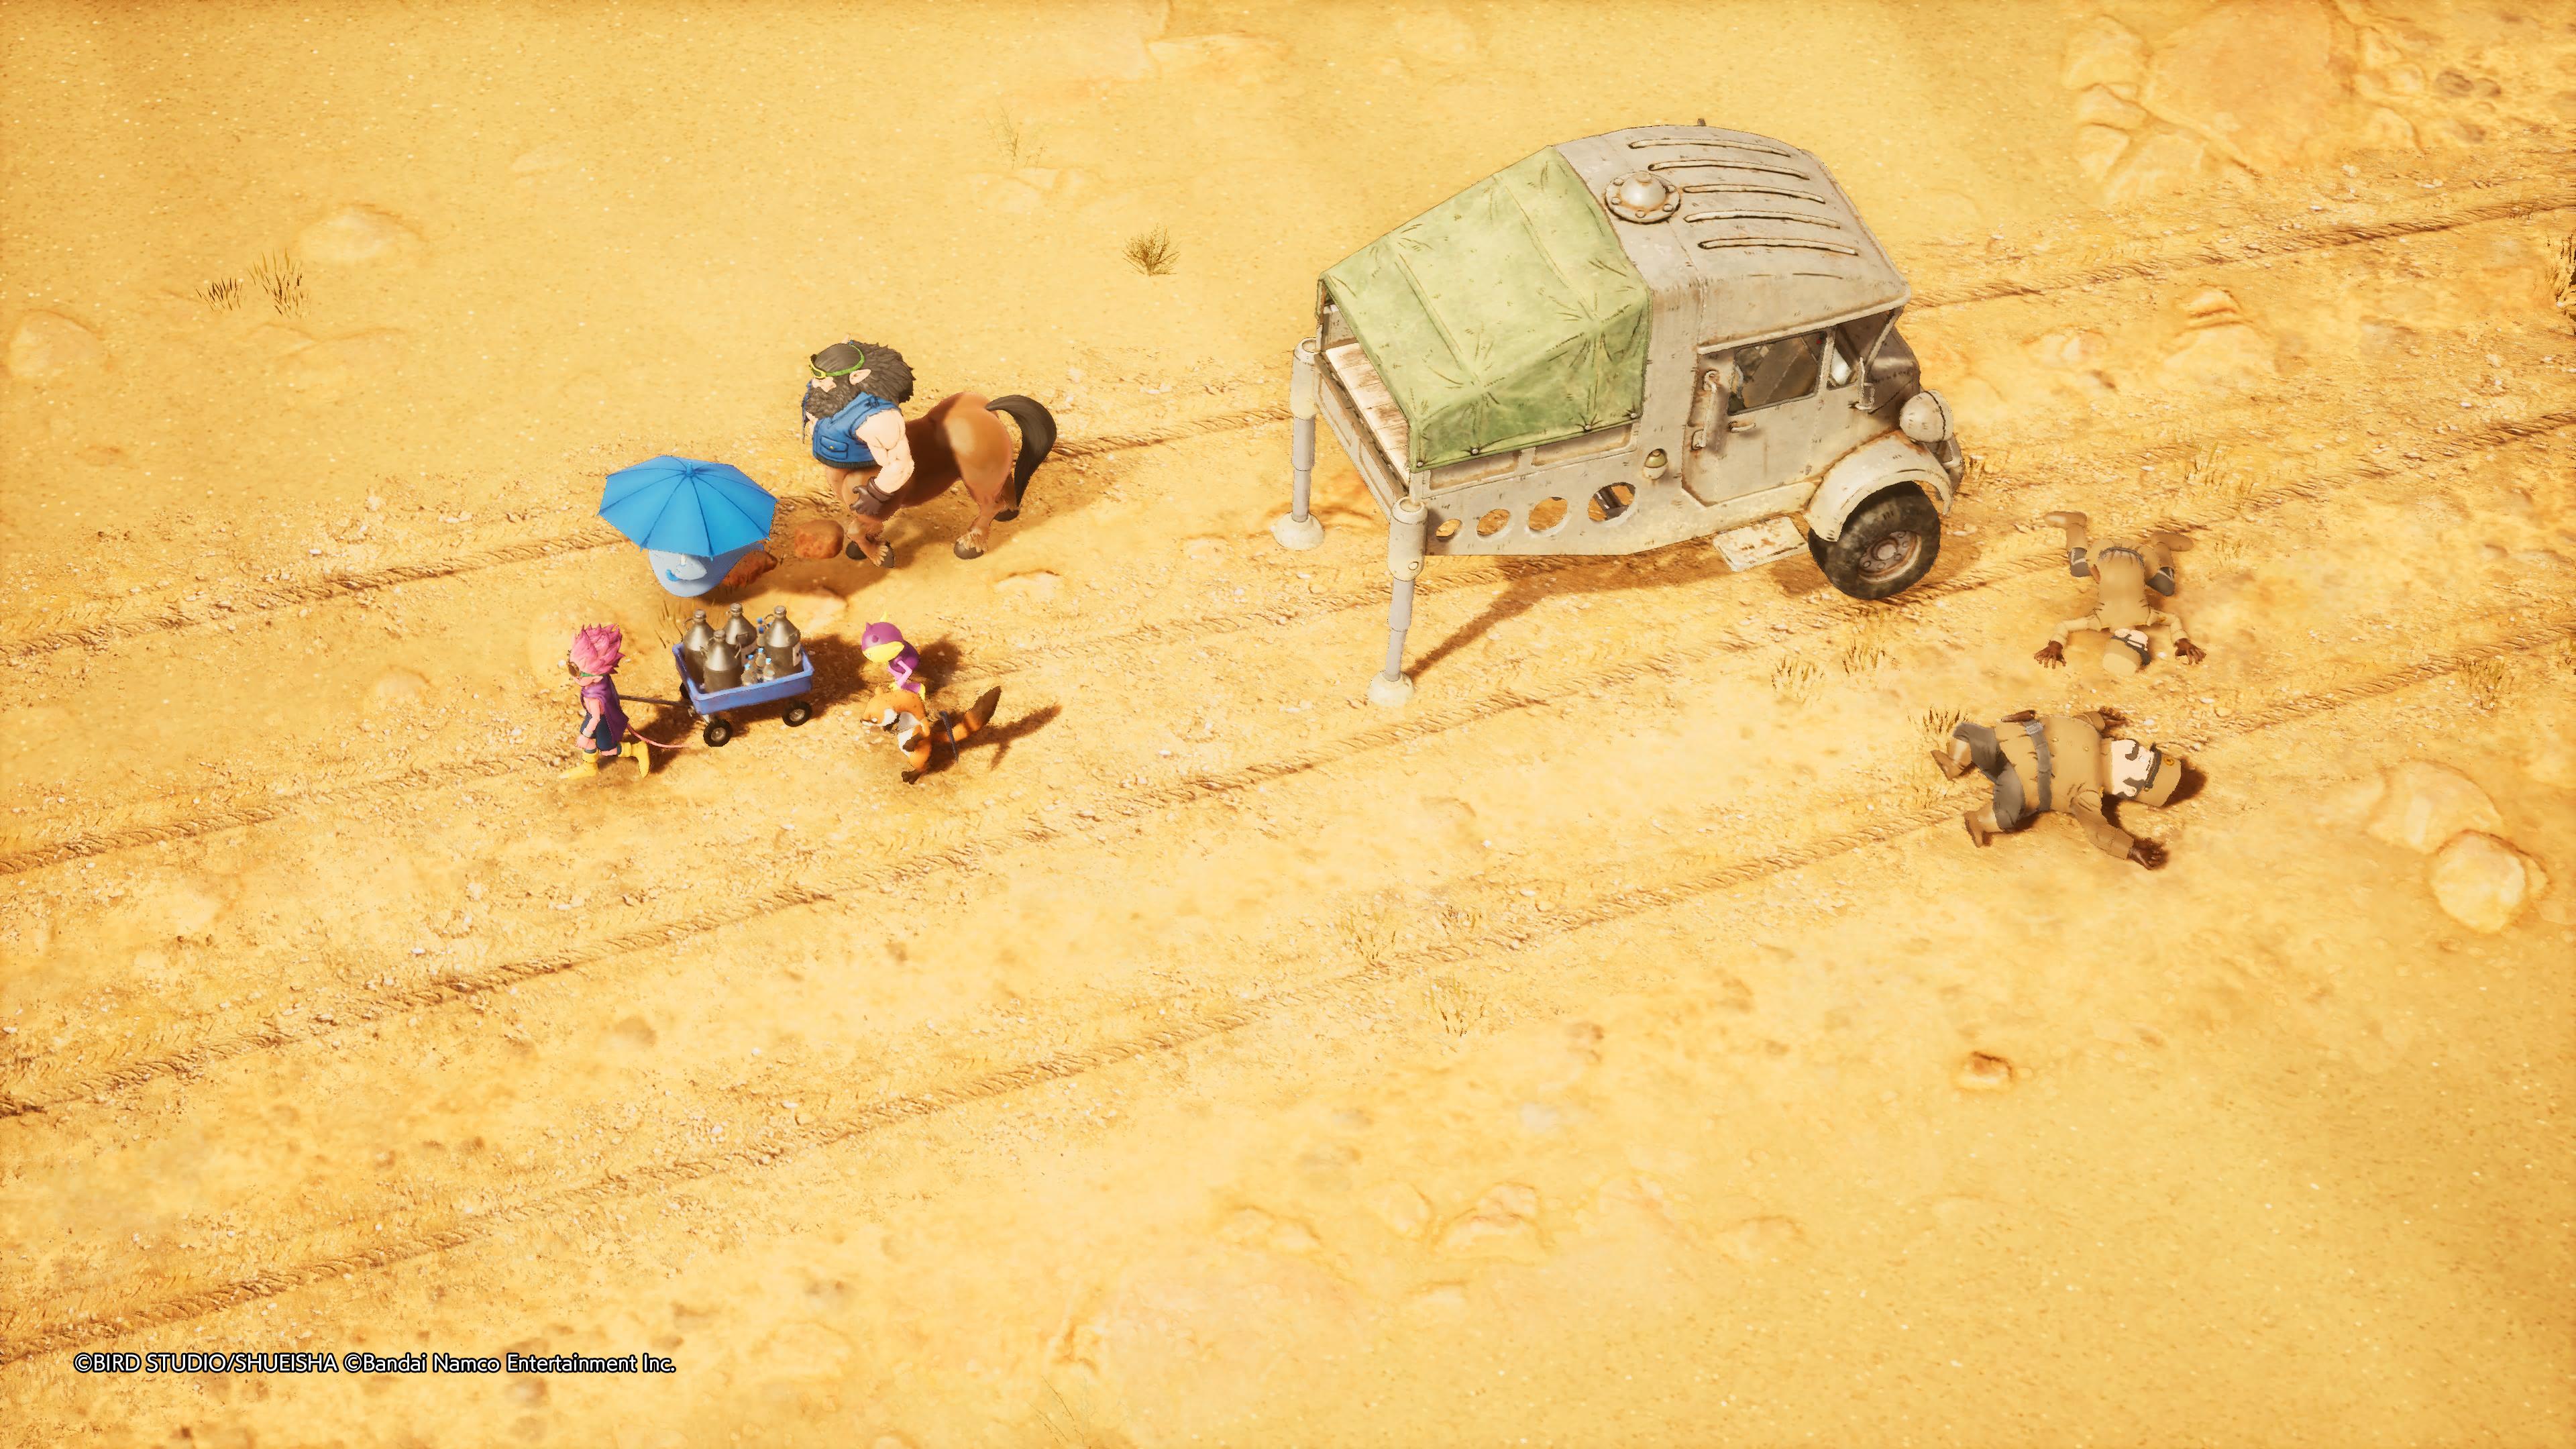 Reseña: Sand Land, una fiel adaptación de la obra de Akira Toriyama 24